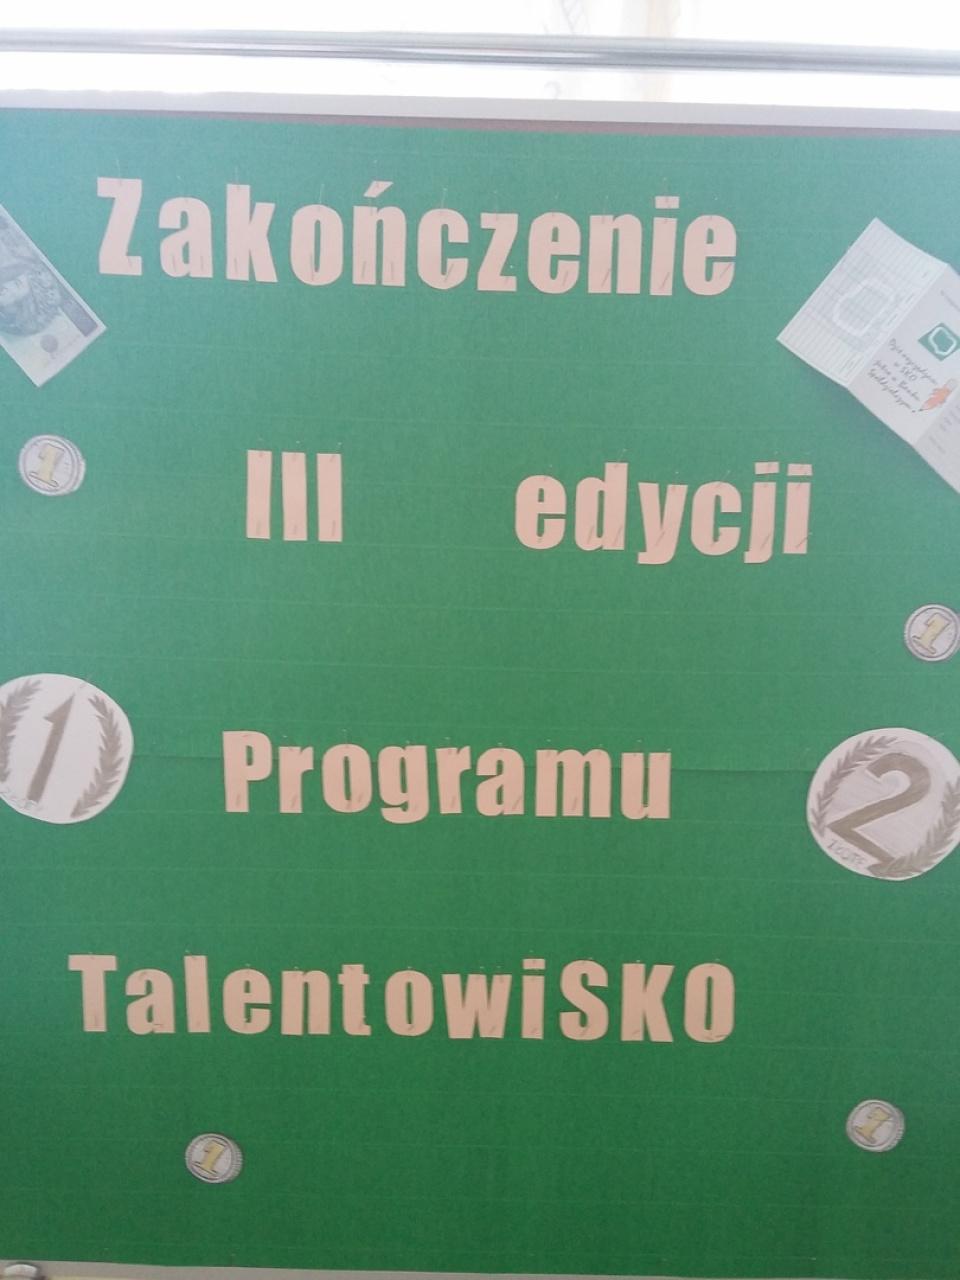 Zakończenie III edycji Programu TalentowiSKO